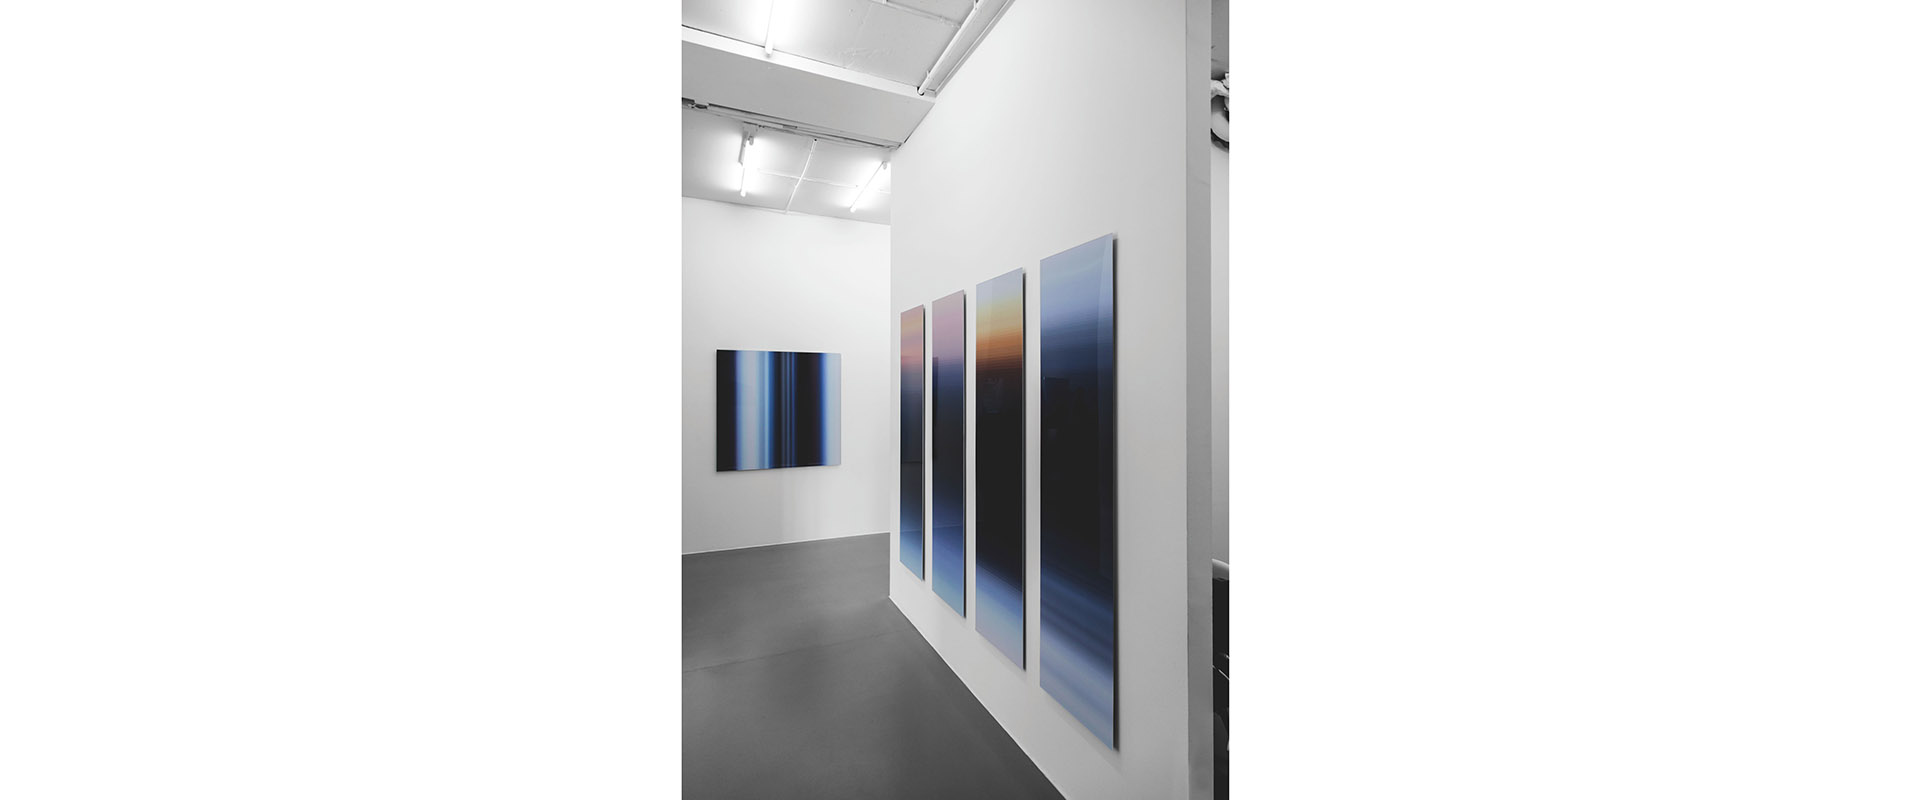 Ausstellungsansicht "Inge Dick - jahres licht weiss", Galerie Renate Bender 2016